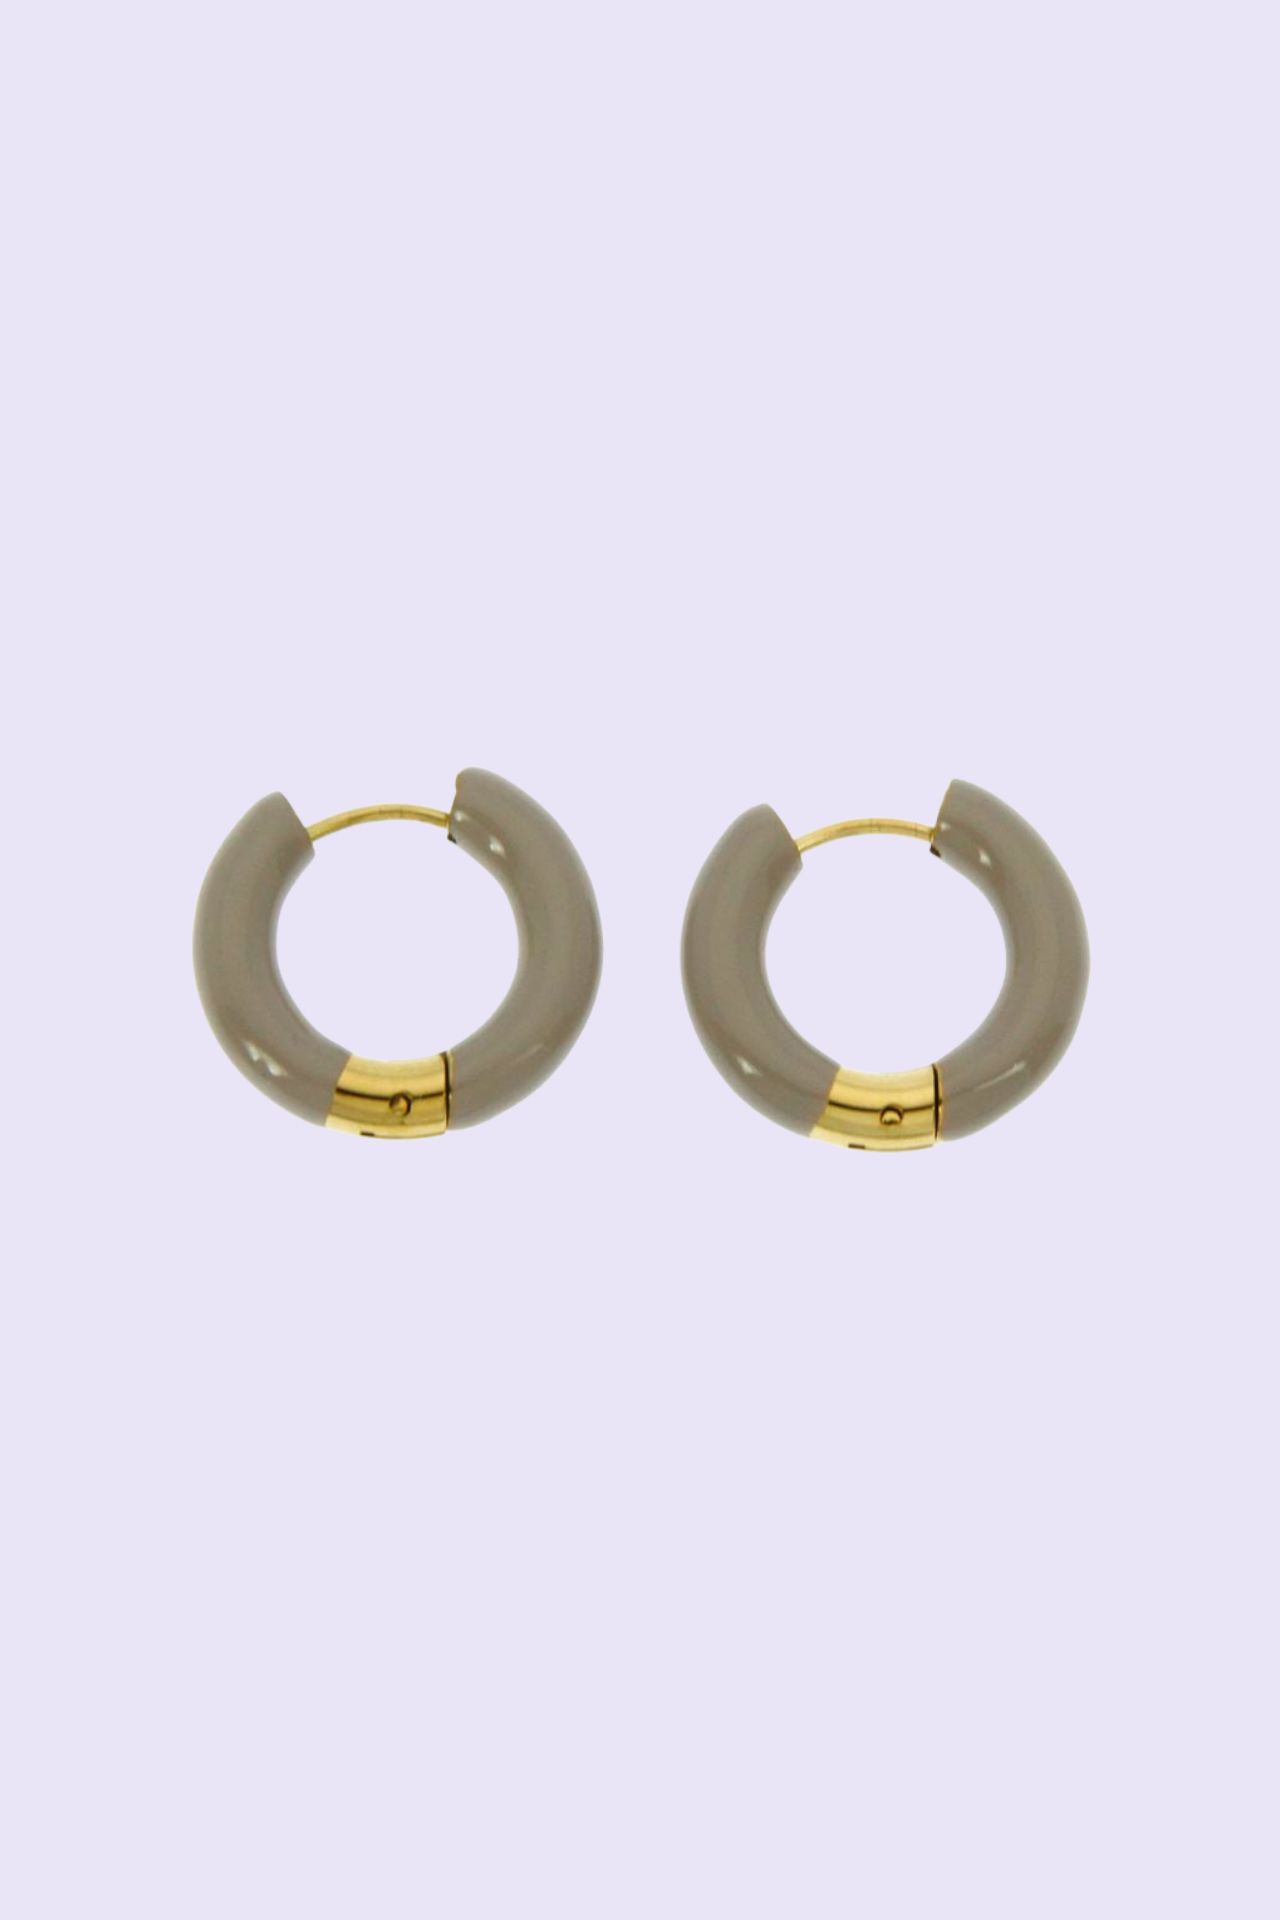 Roual steel earrings